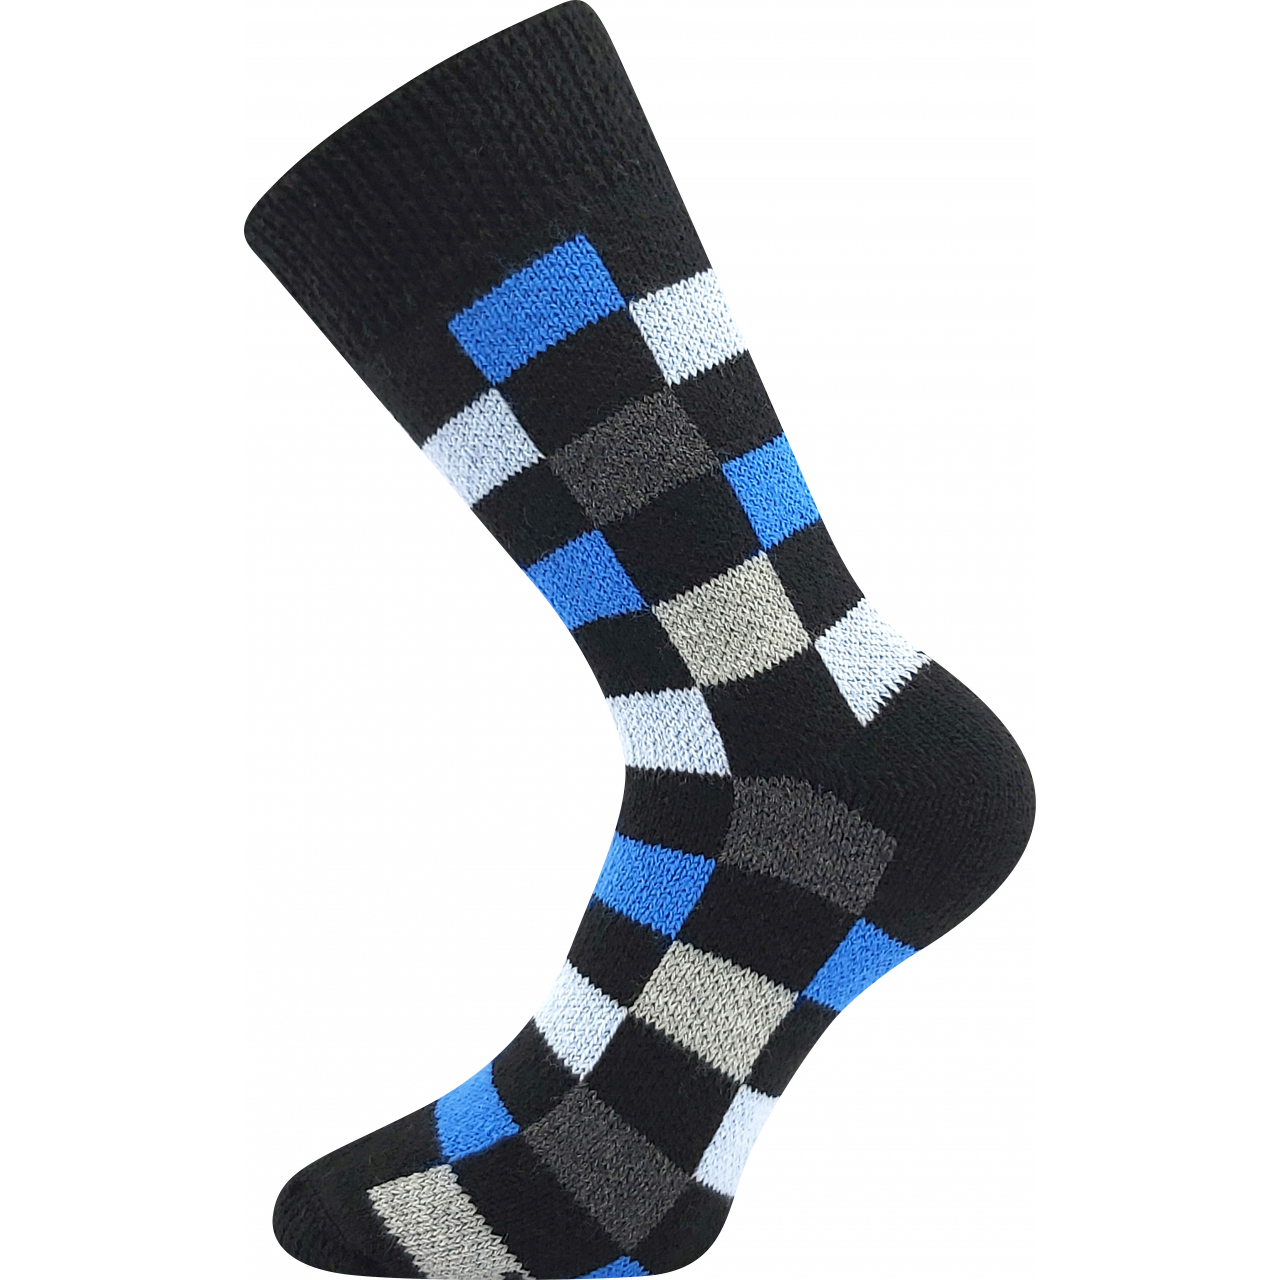 Ponožky unisex spací Boma Kostky - černé-modré, 43-46